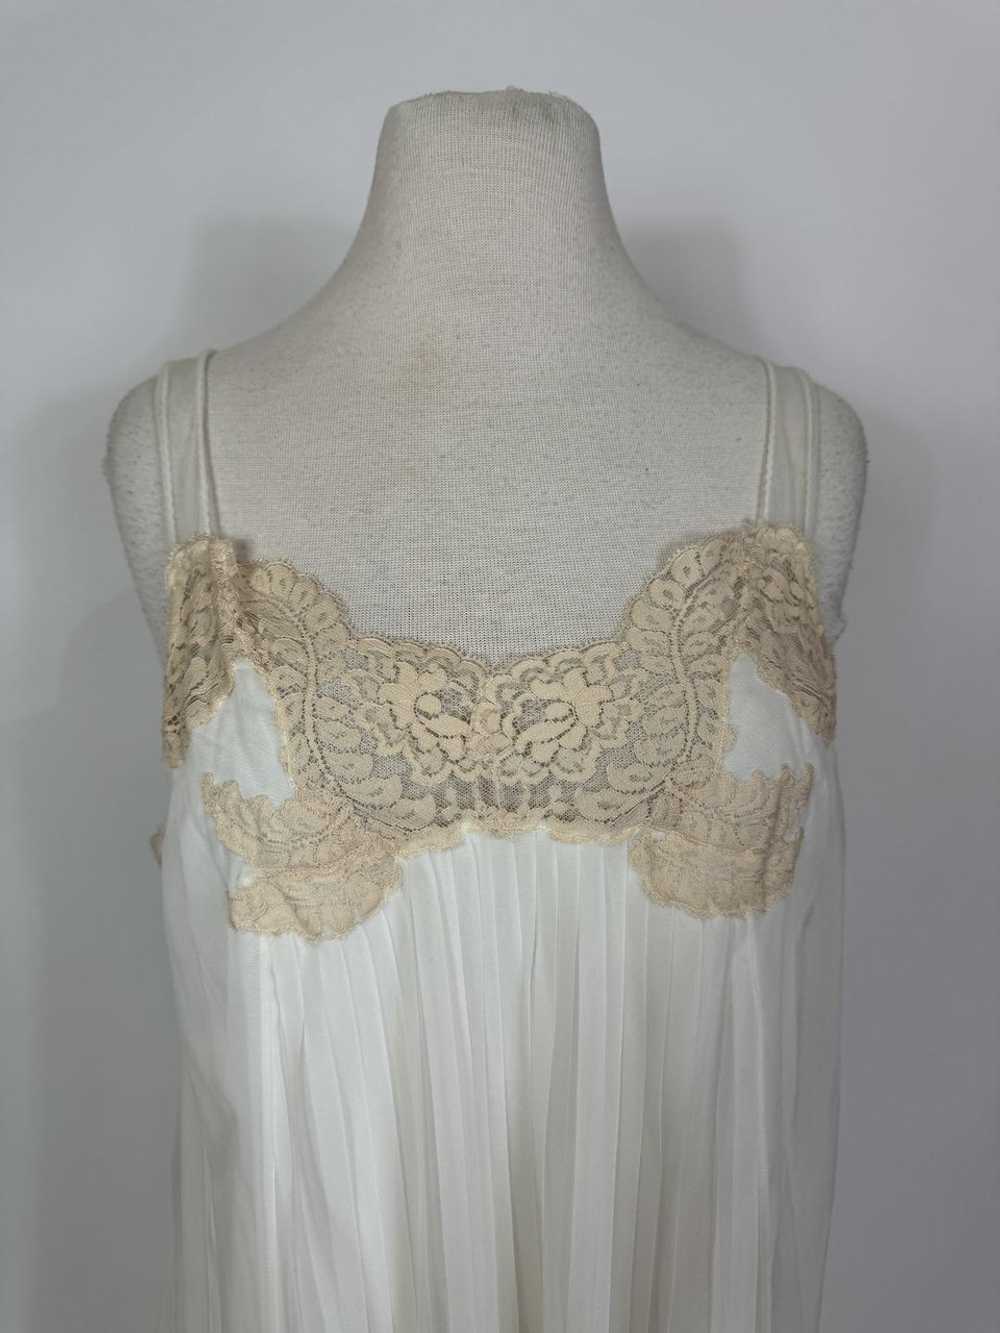 1960s White Pleated Chiffon Lace Trim Slip Dress - image 2